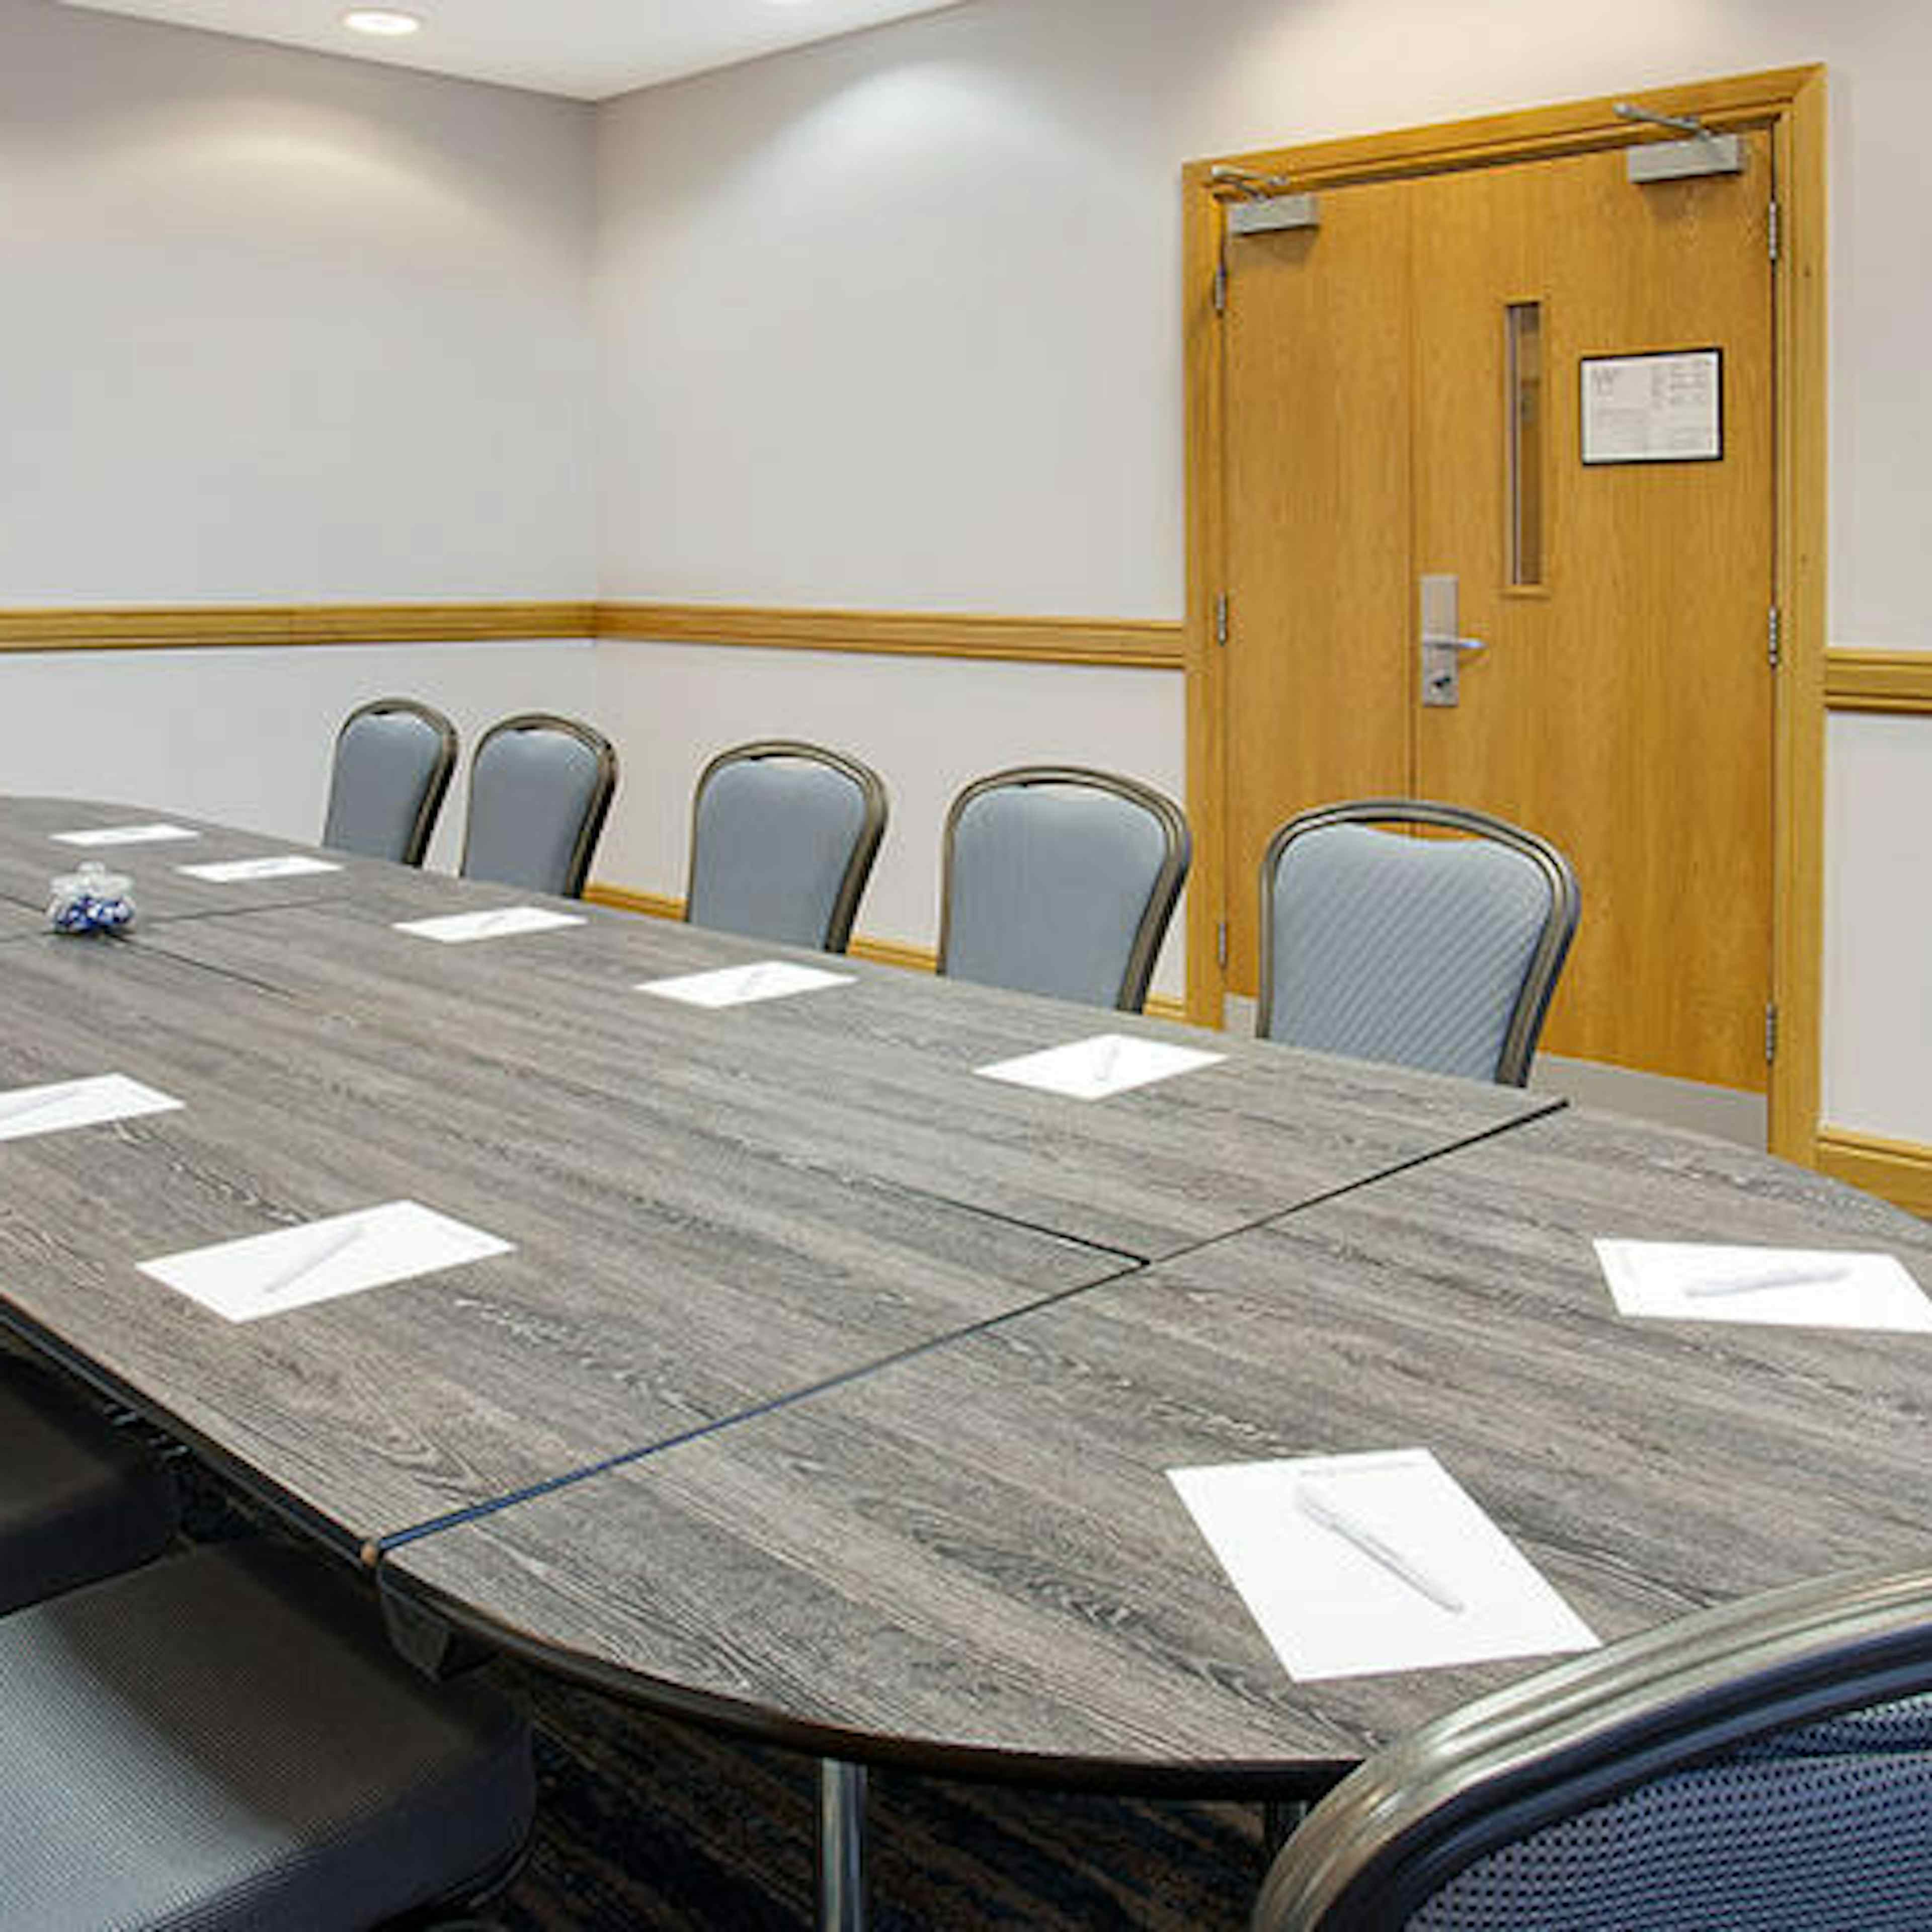 Jurys Inn Liverpool - Meeting Room 1 image 2